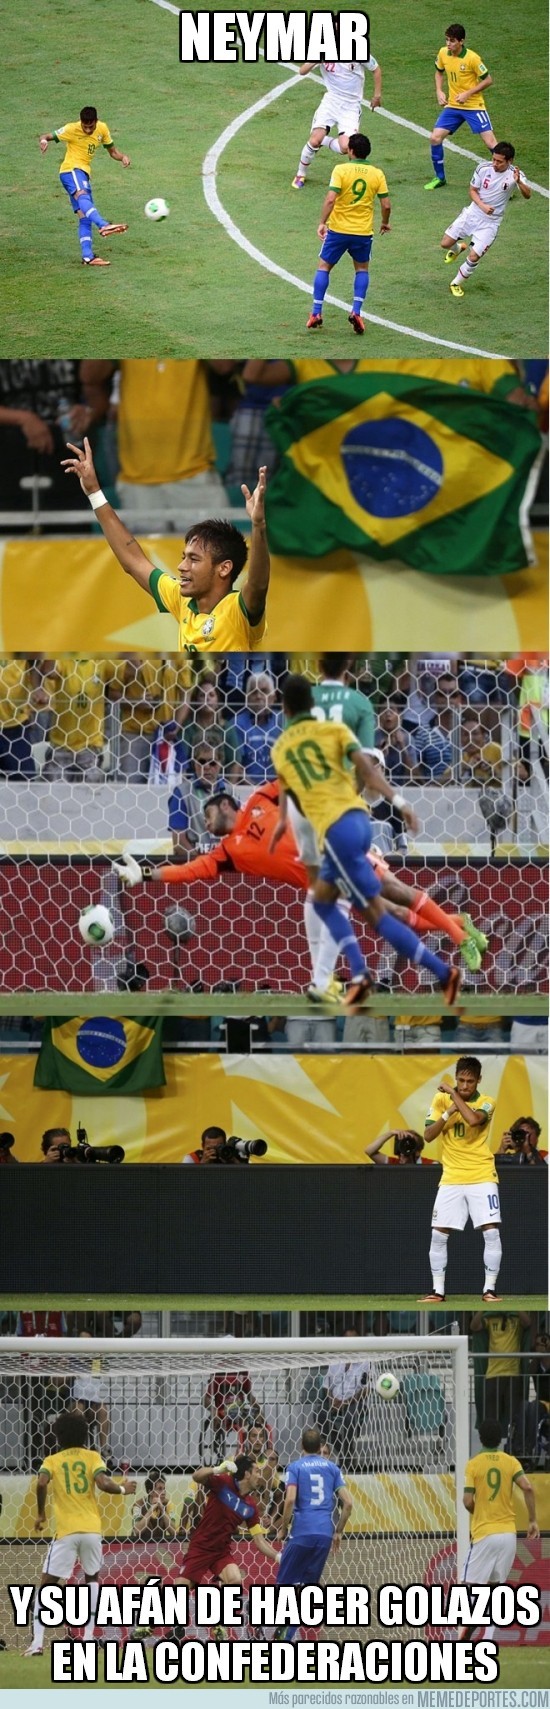 154547 - Neymar callando bocas